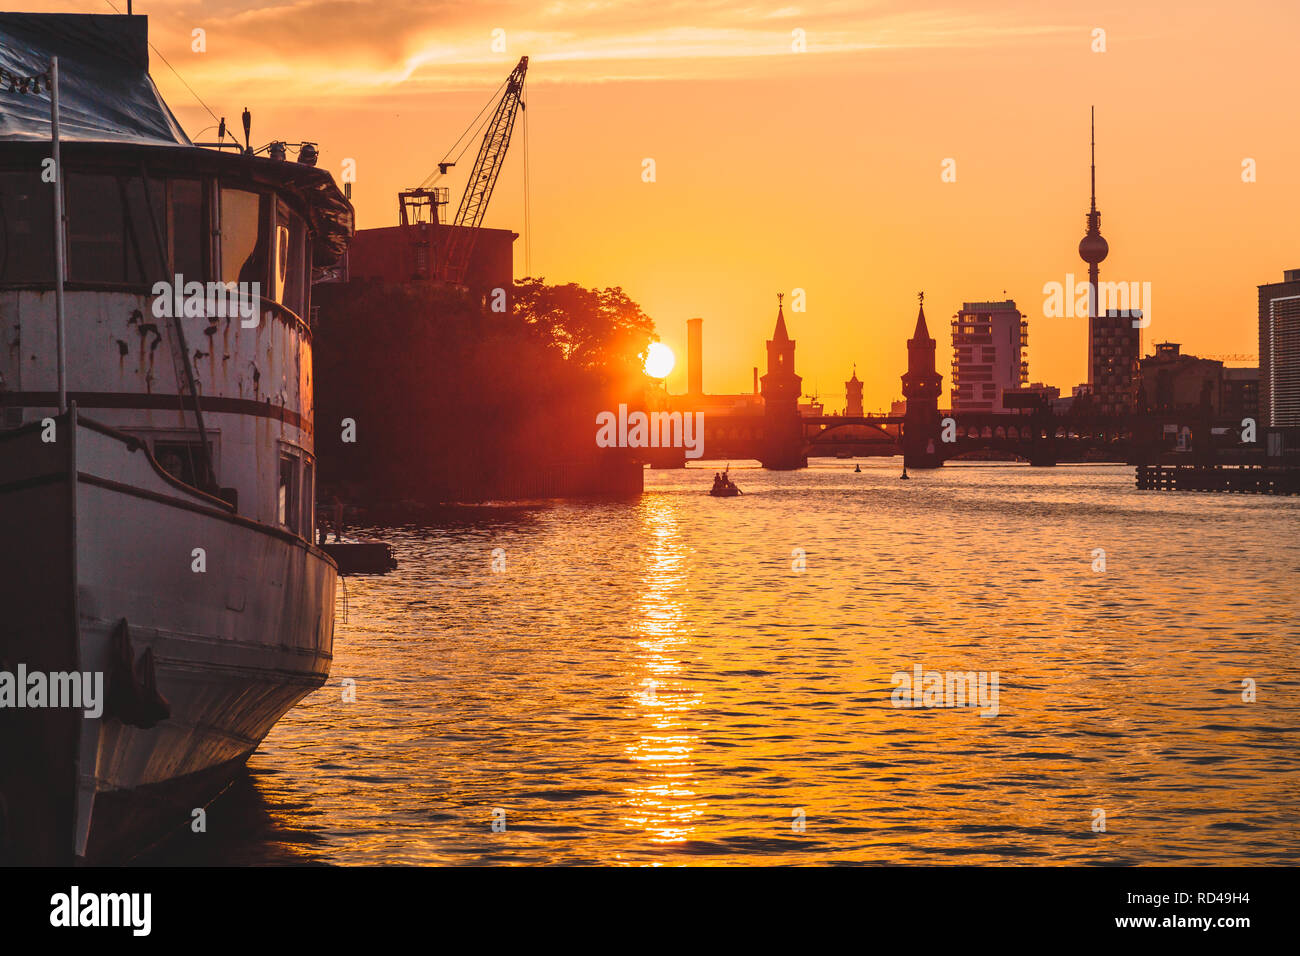 Panoramablick auf Berlin Skyline mit berühmten Fernsehturm und Oberbaumbrücke mit alten Schiffswrack liegen in der Spree bei Dämmerung, Berlin, Deutschland Stockfoto